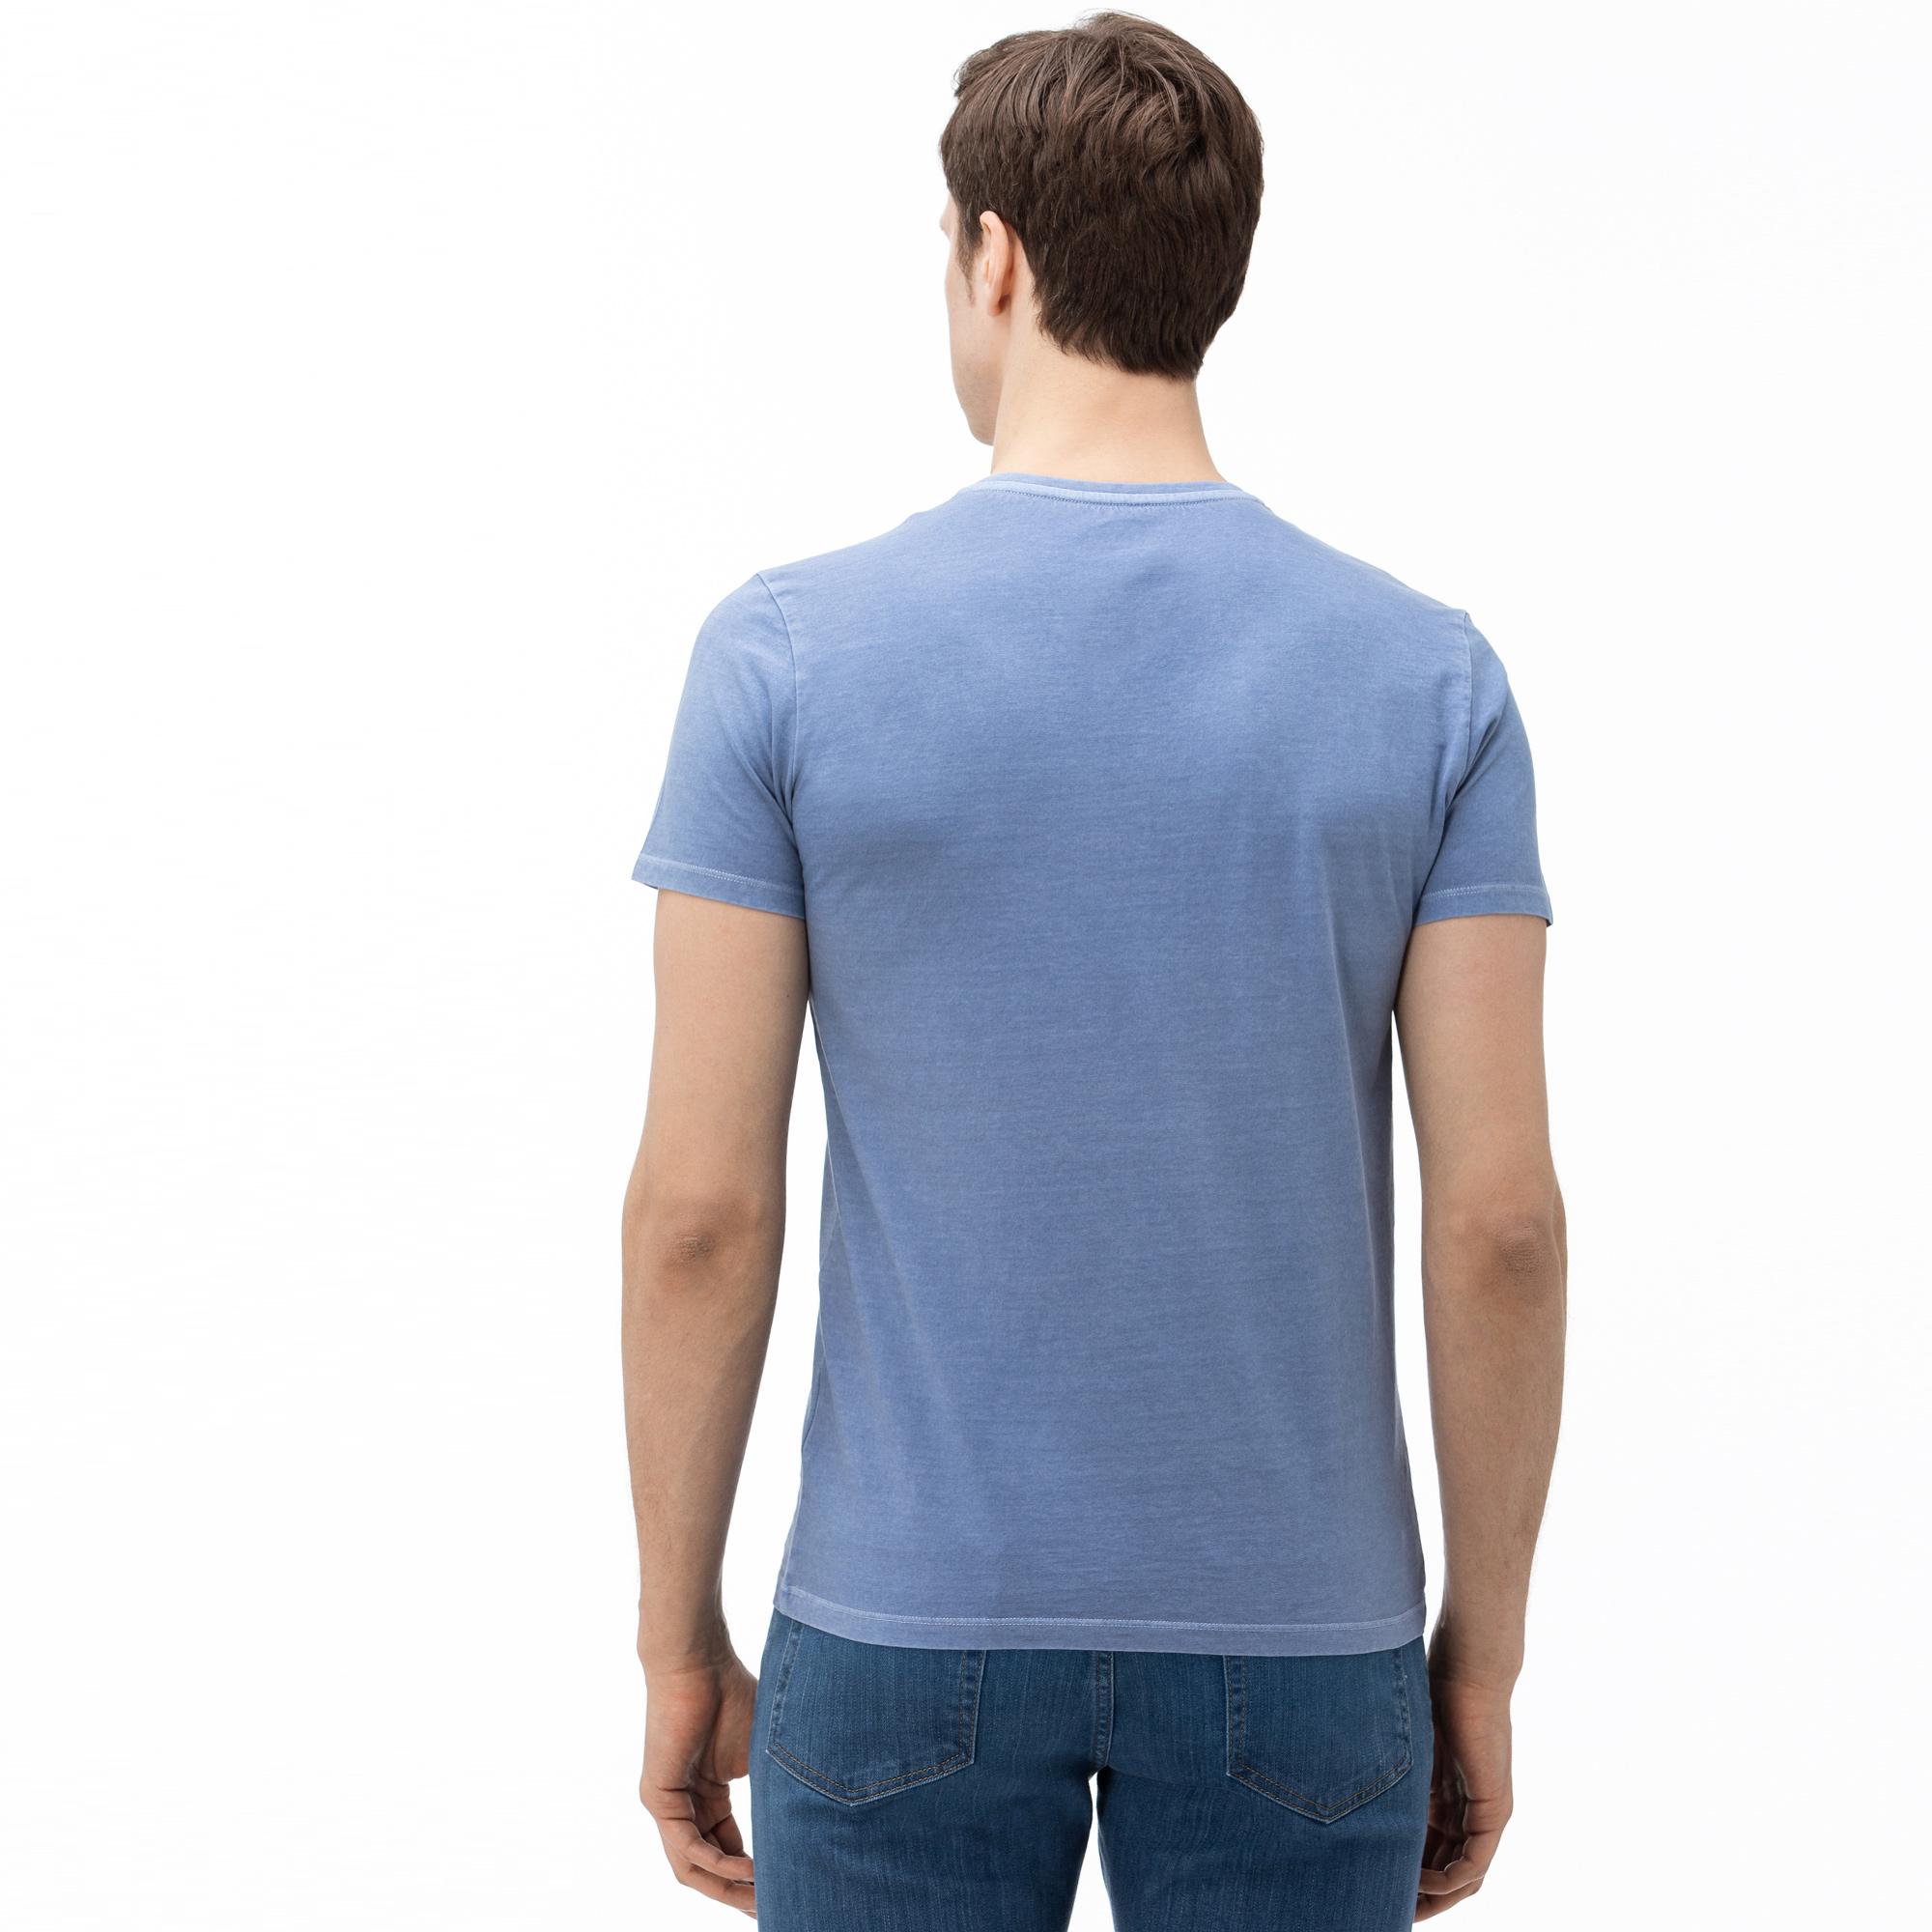 Lacoste Erkek V Yaka Mavi T-Shirt. 3